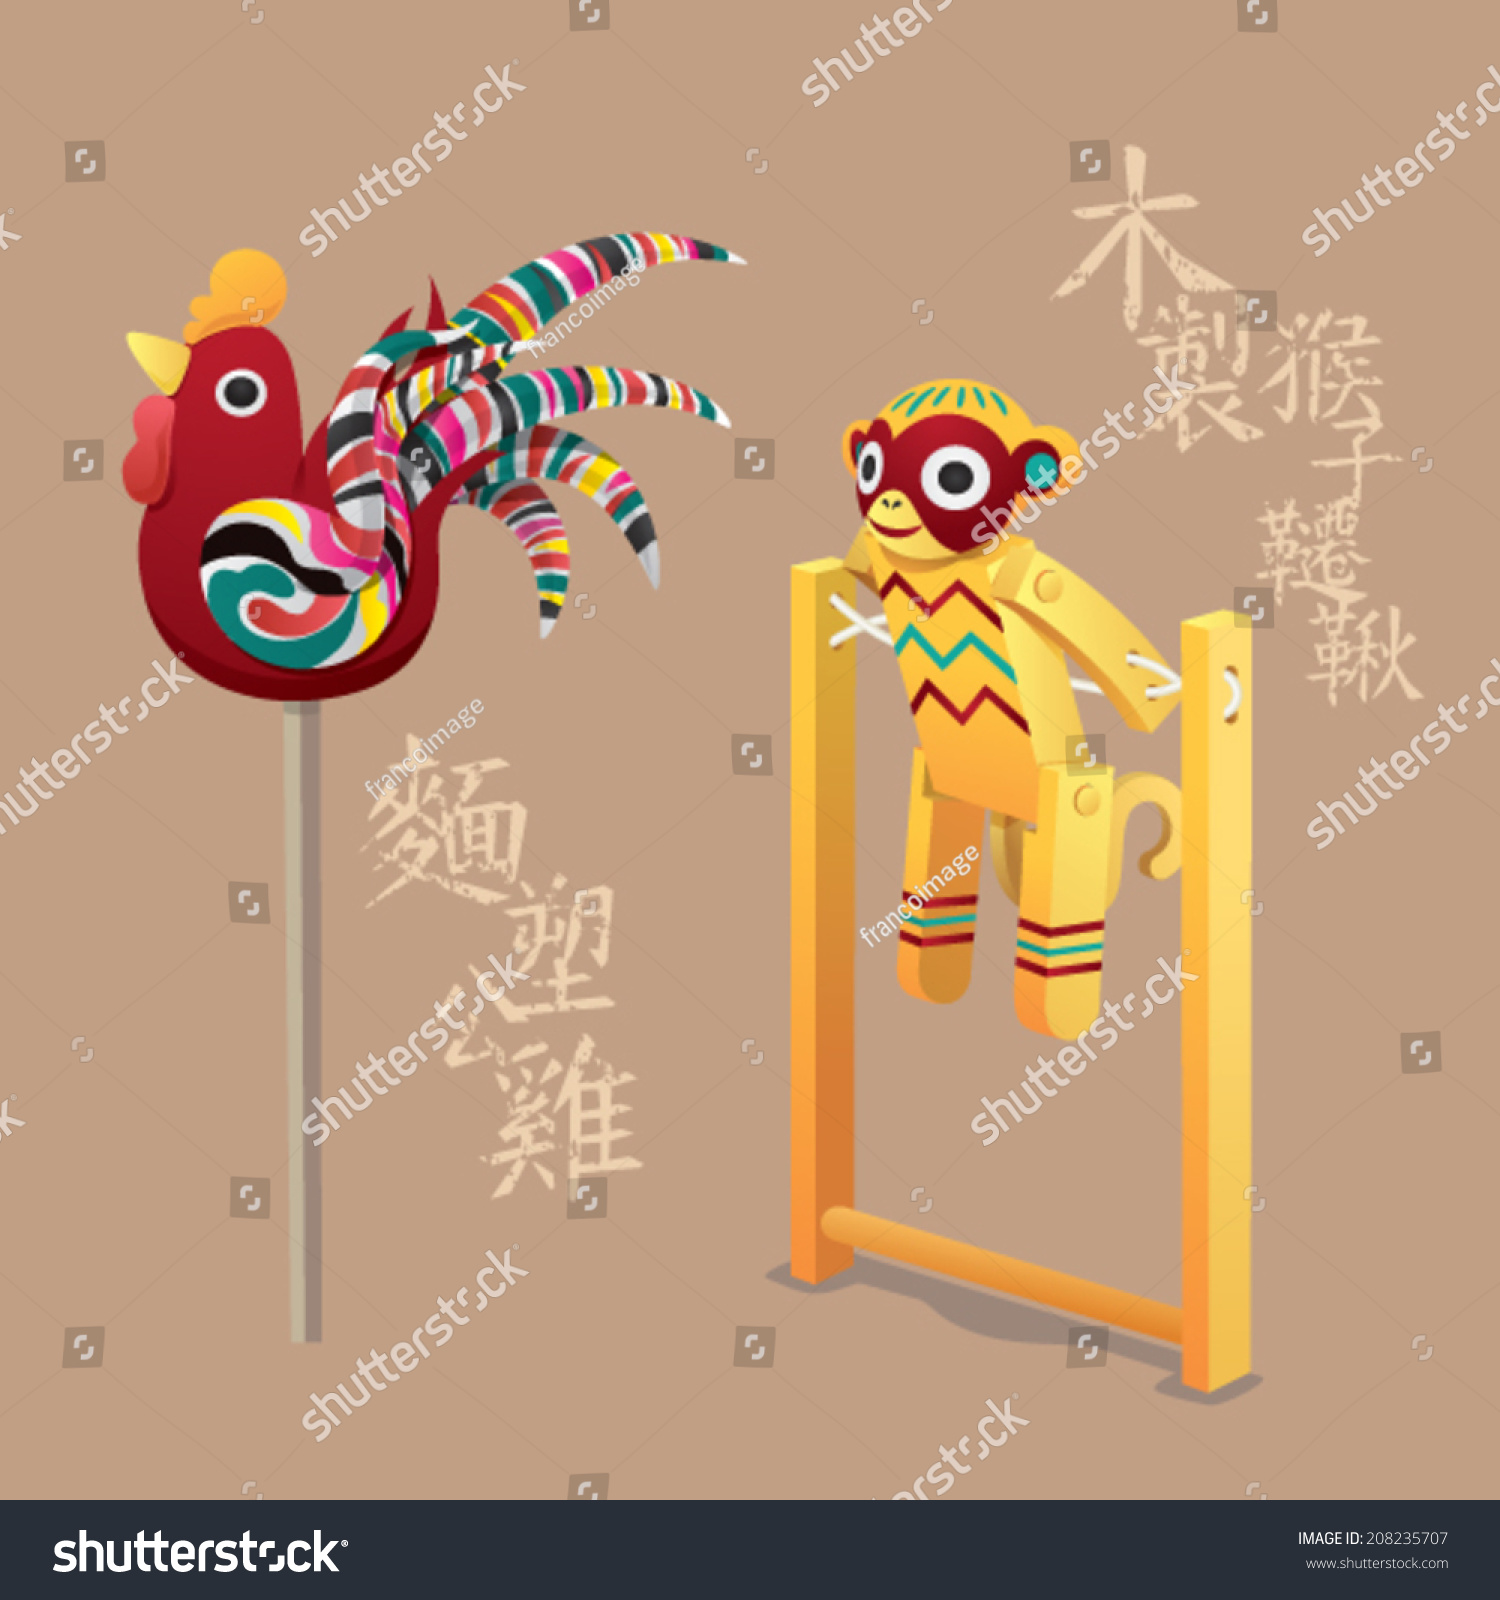 中国古代儿童玩具:木制秋千设备(猴子)和面塑(